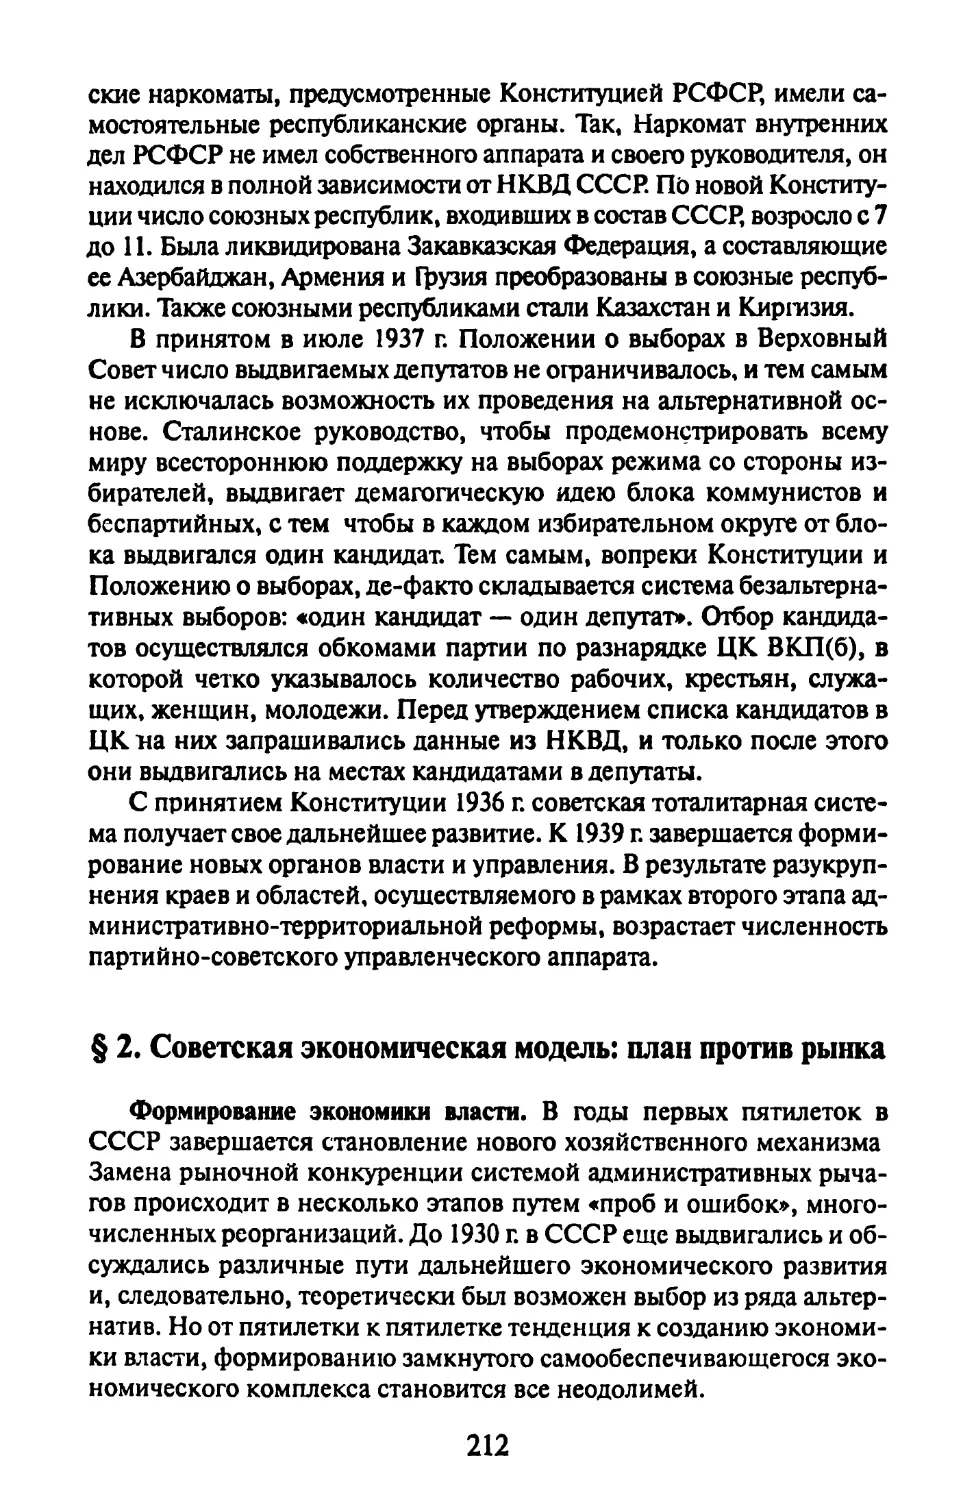 § 2. Советская экономическая модель: план против рынка